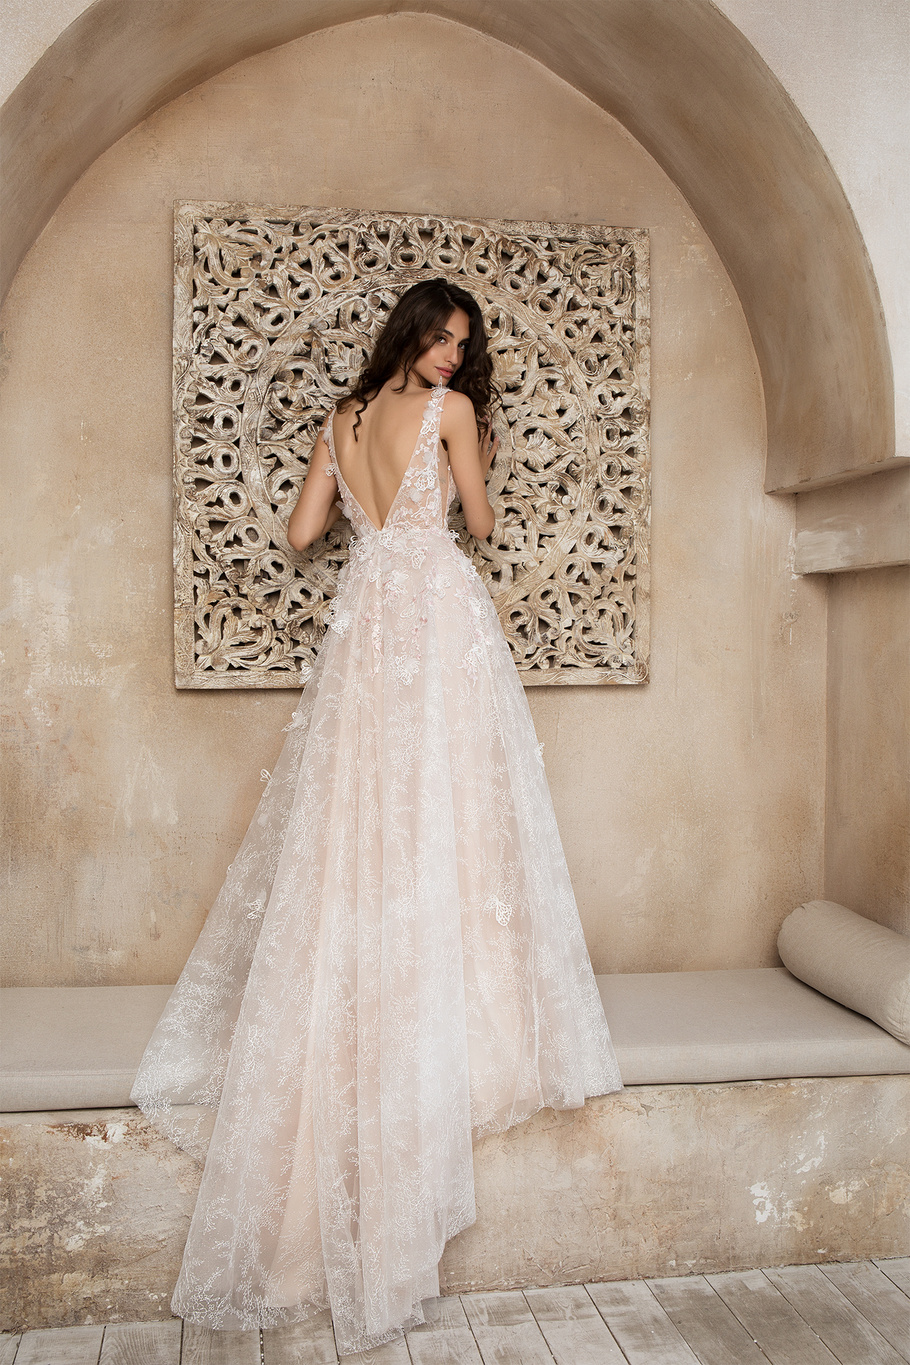 Купить свадебное платье «Кармелла» Татьяны Каплун из коллекции «Даймонд Скай» 2020 в салоне